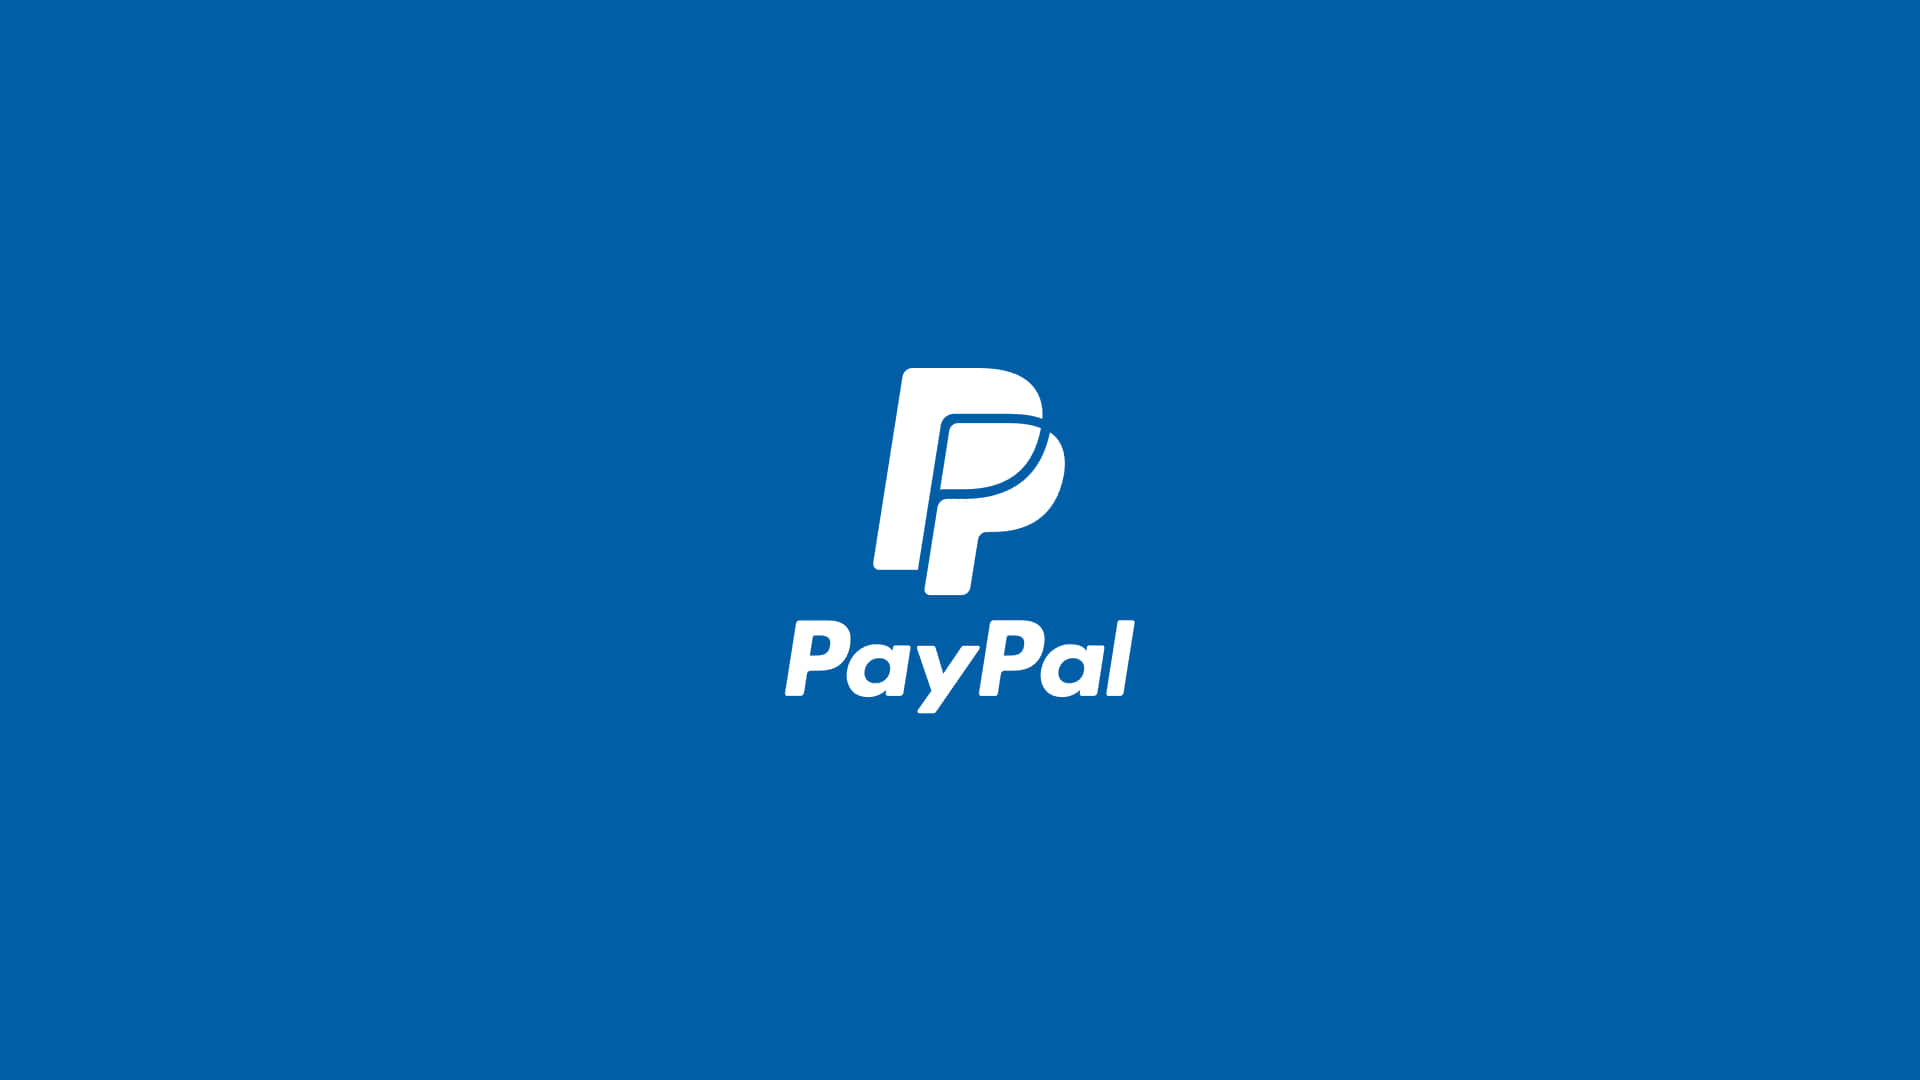 Logode Paypal En Un Fondo Azul